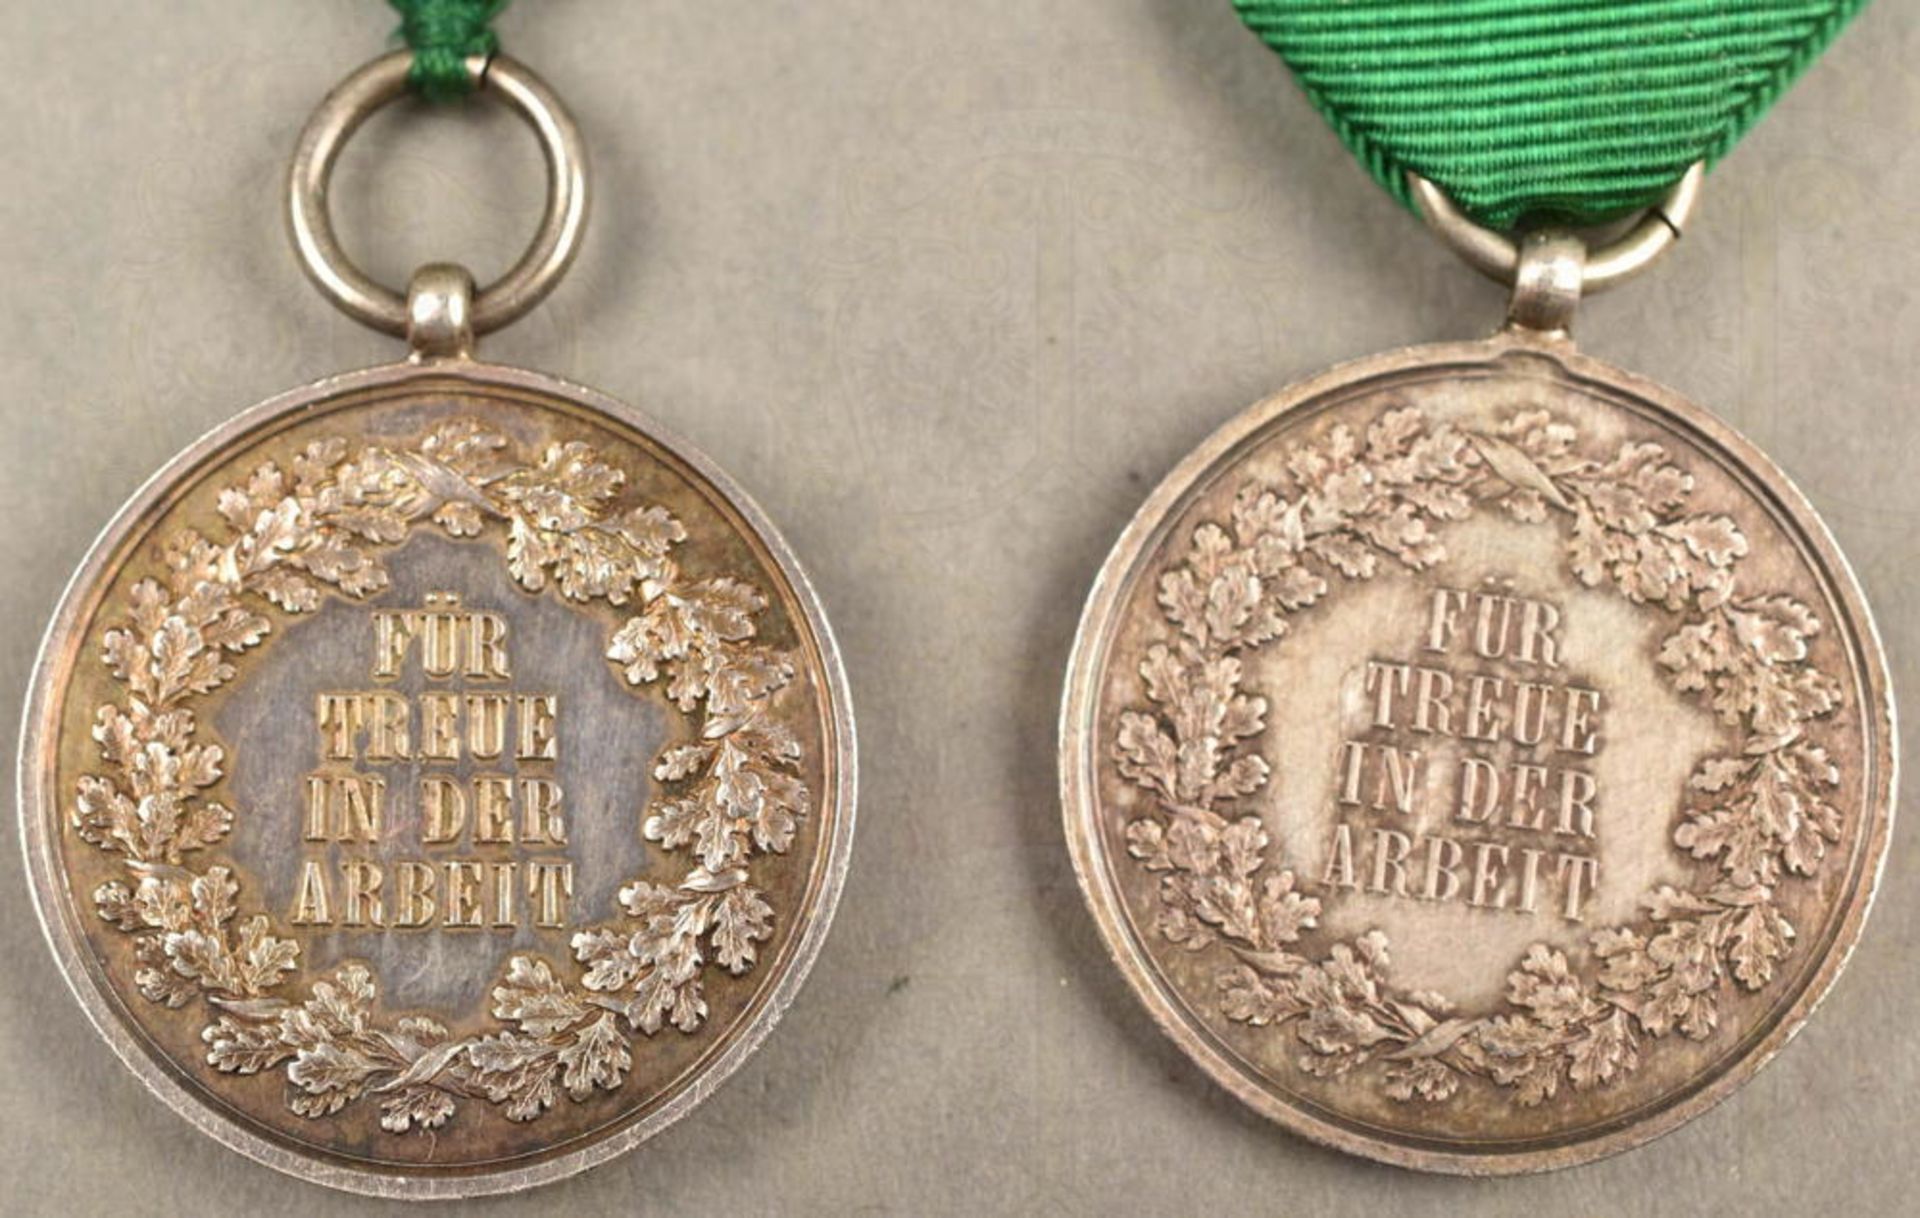 2 Medaillen Für Treue in der Arbeit - Image 4 of 4